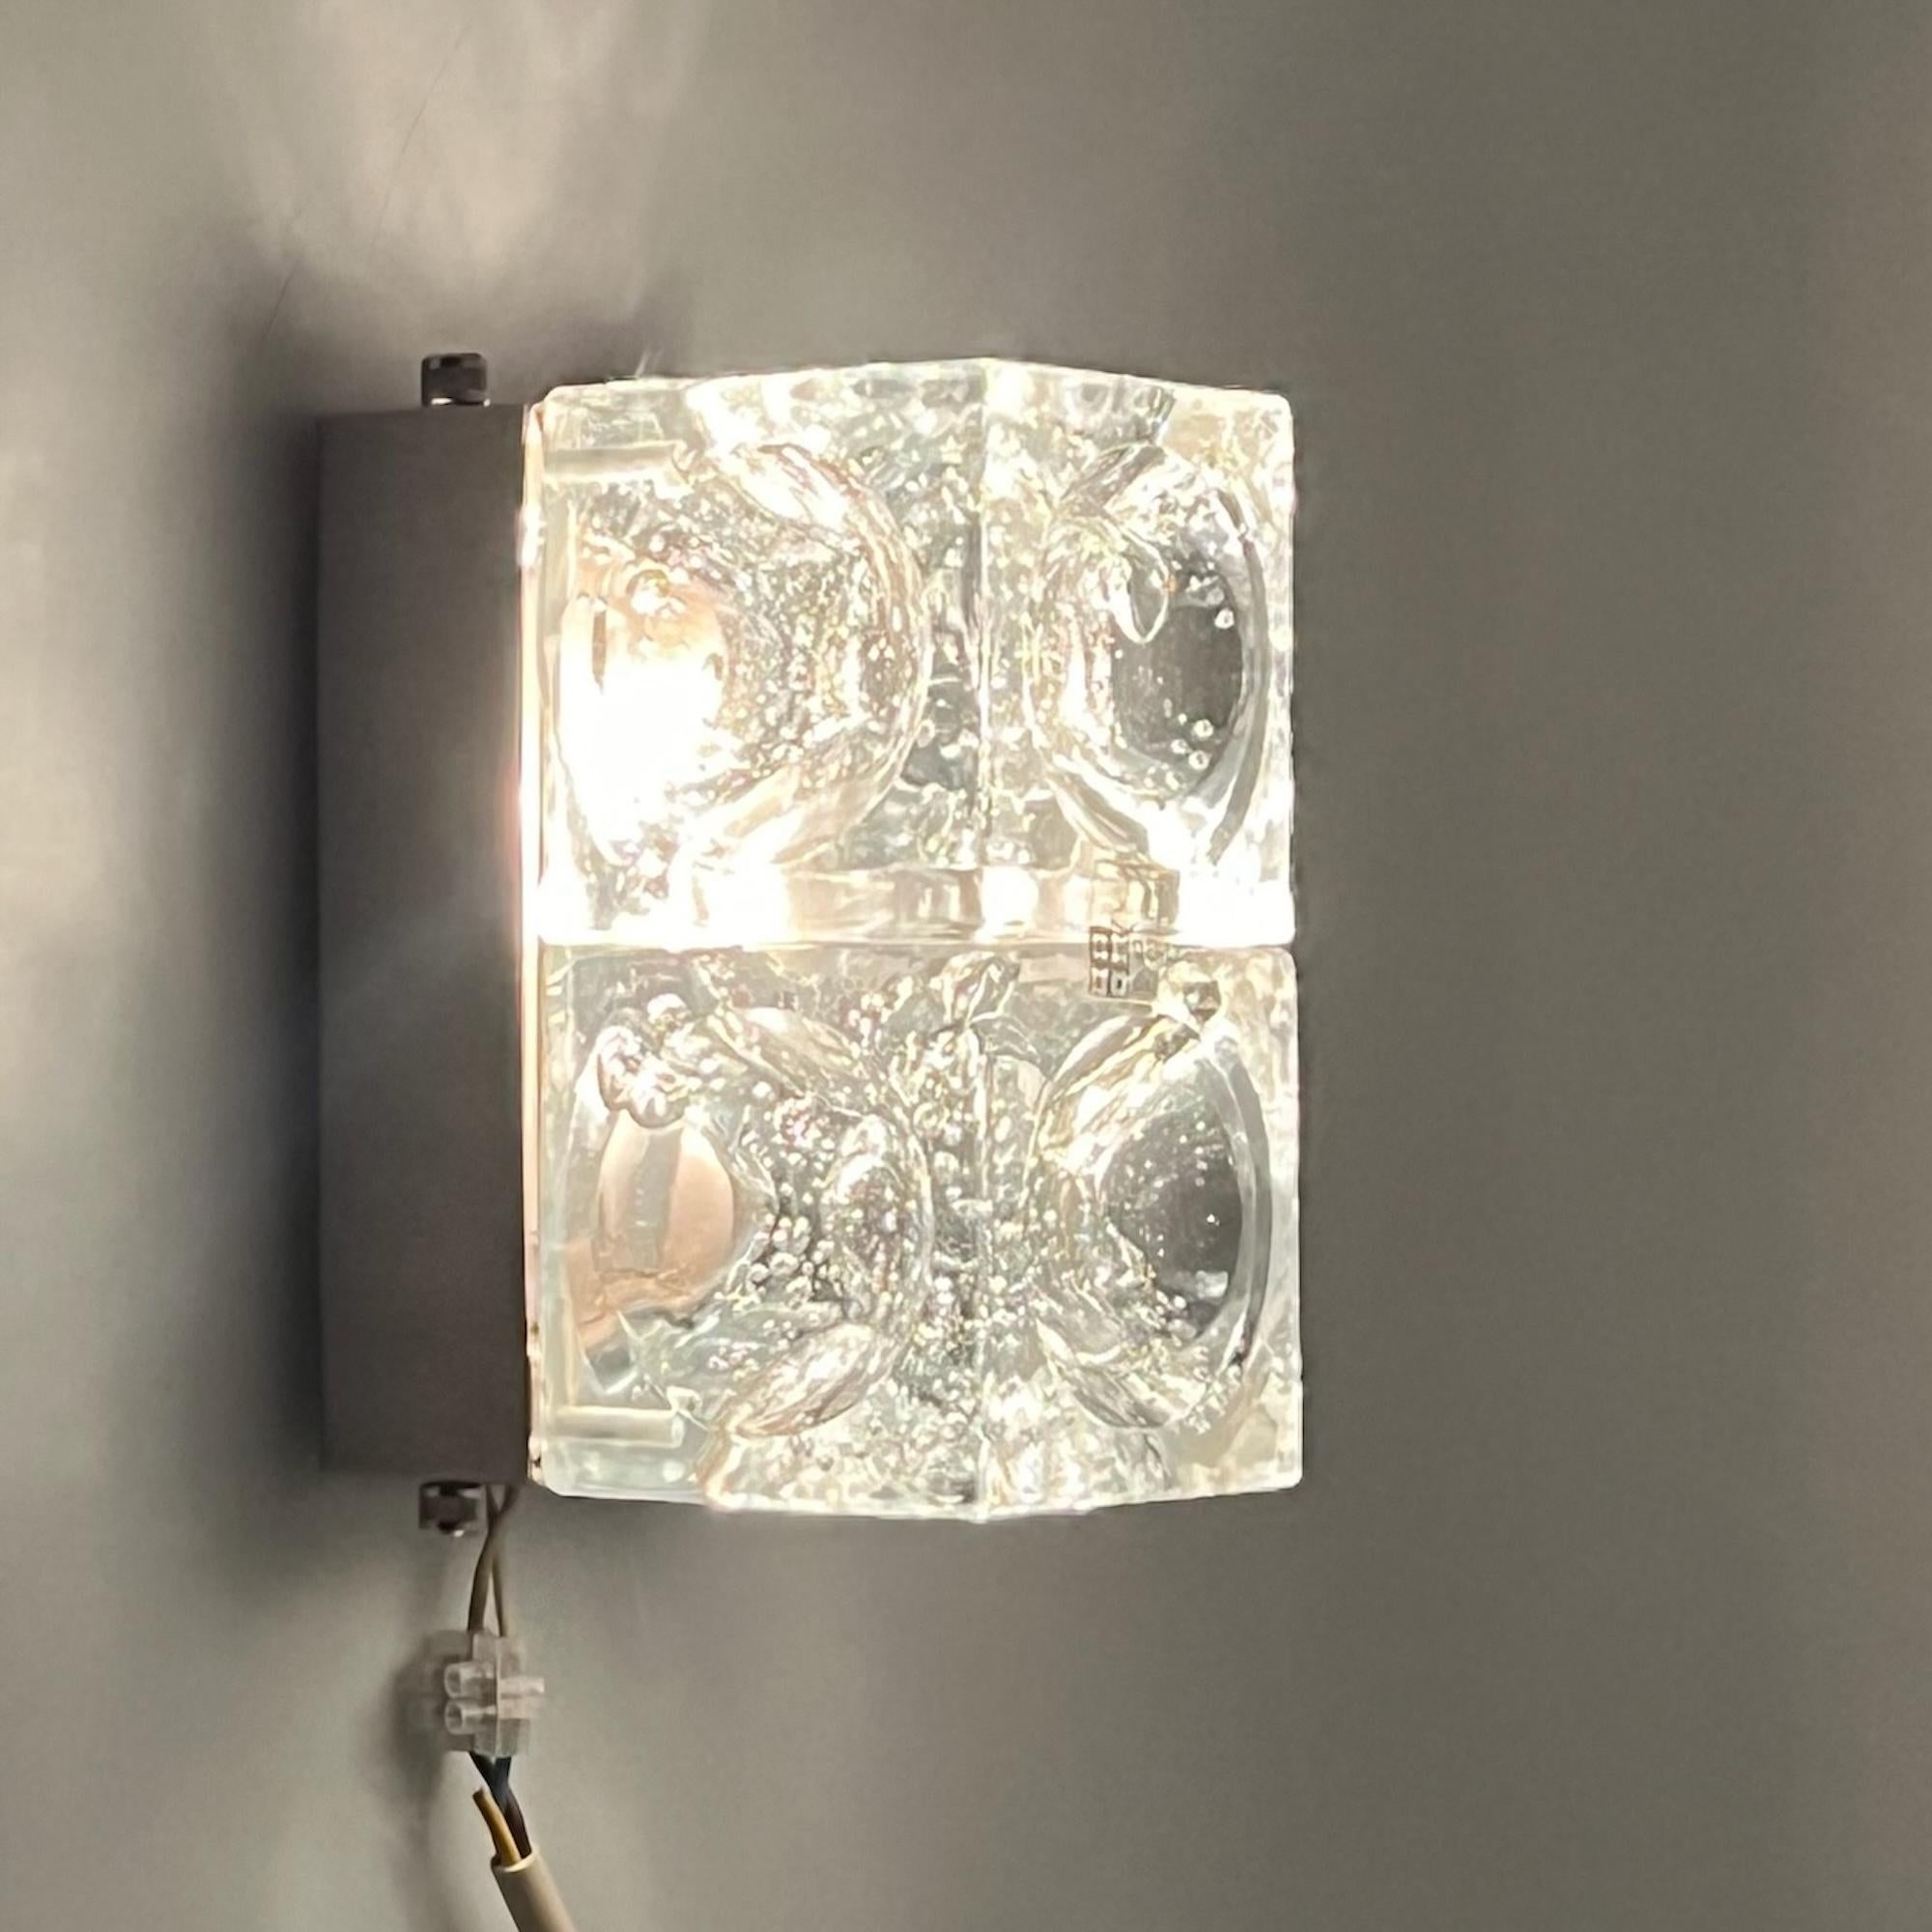 Modèle rare et distinctif de la gamme emblématique Poliarte, la lampe Icone a été méticuleusement fabriquée par le maître Albano Poli. Ce chef-d'œuvre présente deux cubes concaves en verre bulle sertis dans une base métallique avec des vis en acier